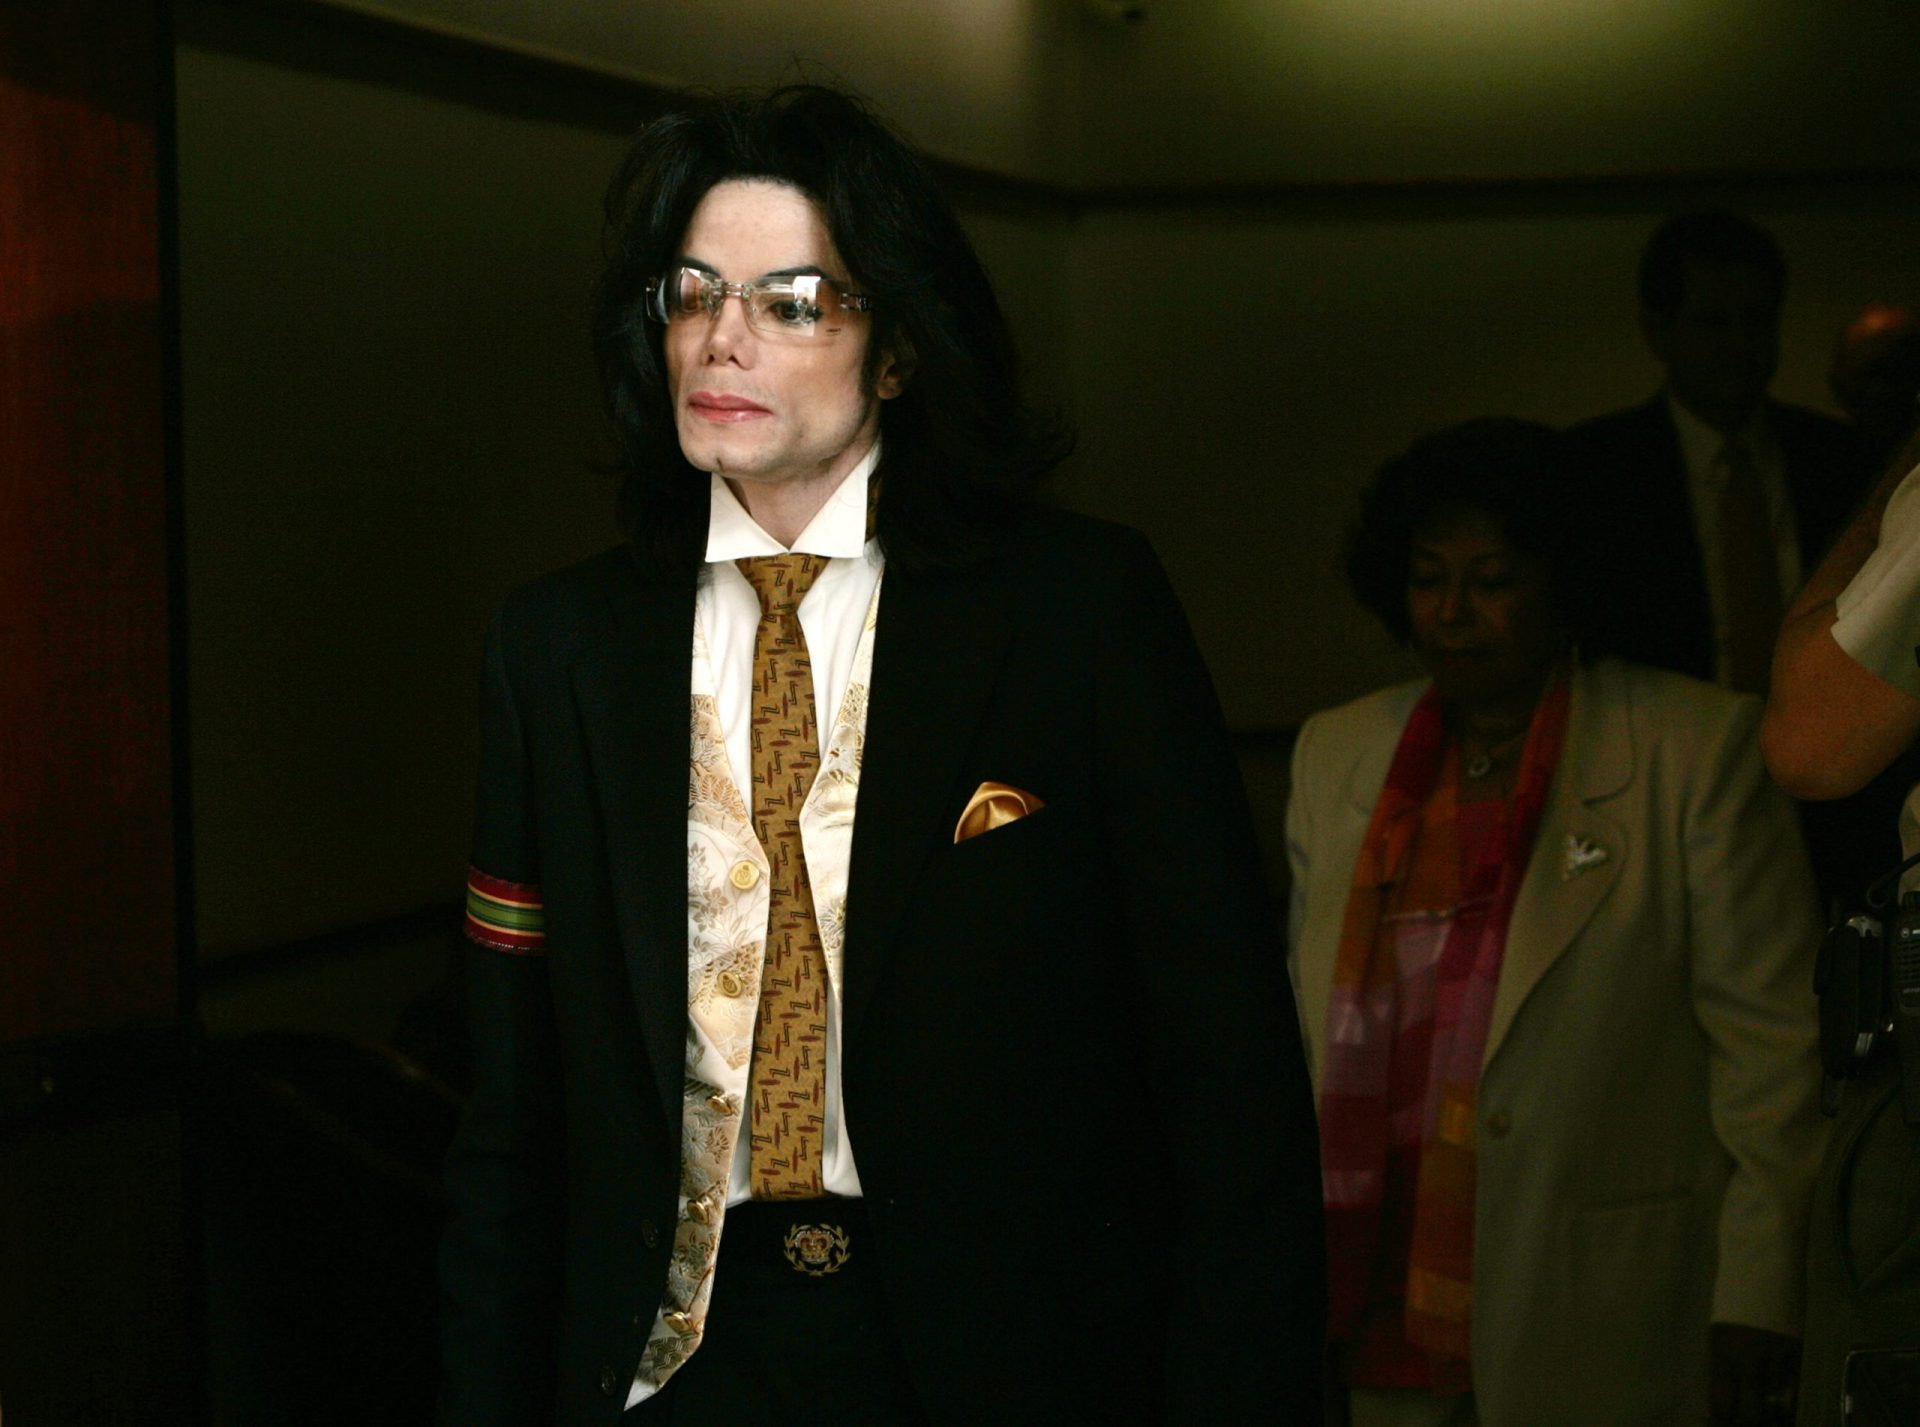 Namorada de Michael Jackson diz que revelações sobre alegados abusos sexuais a menores são mentira